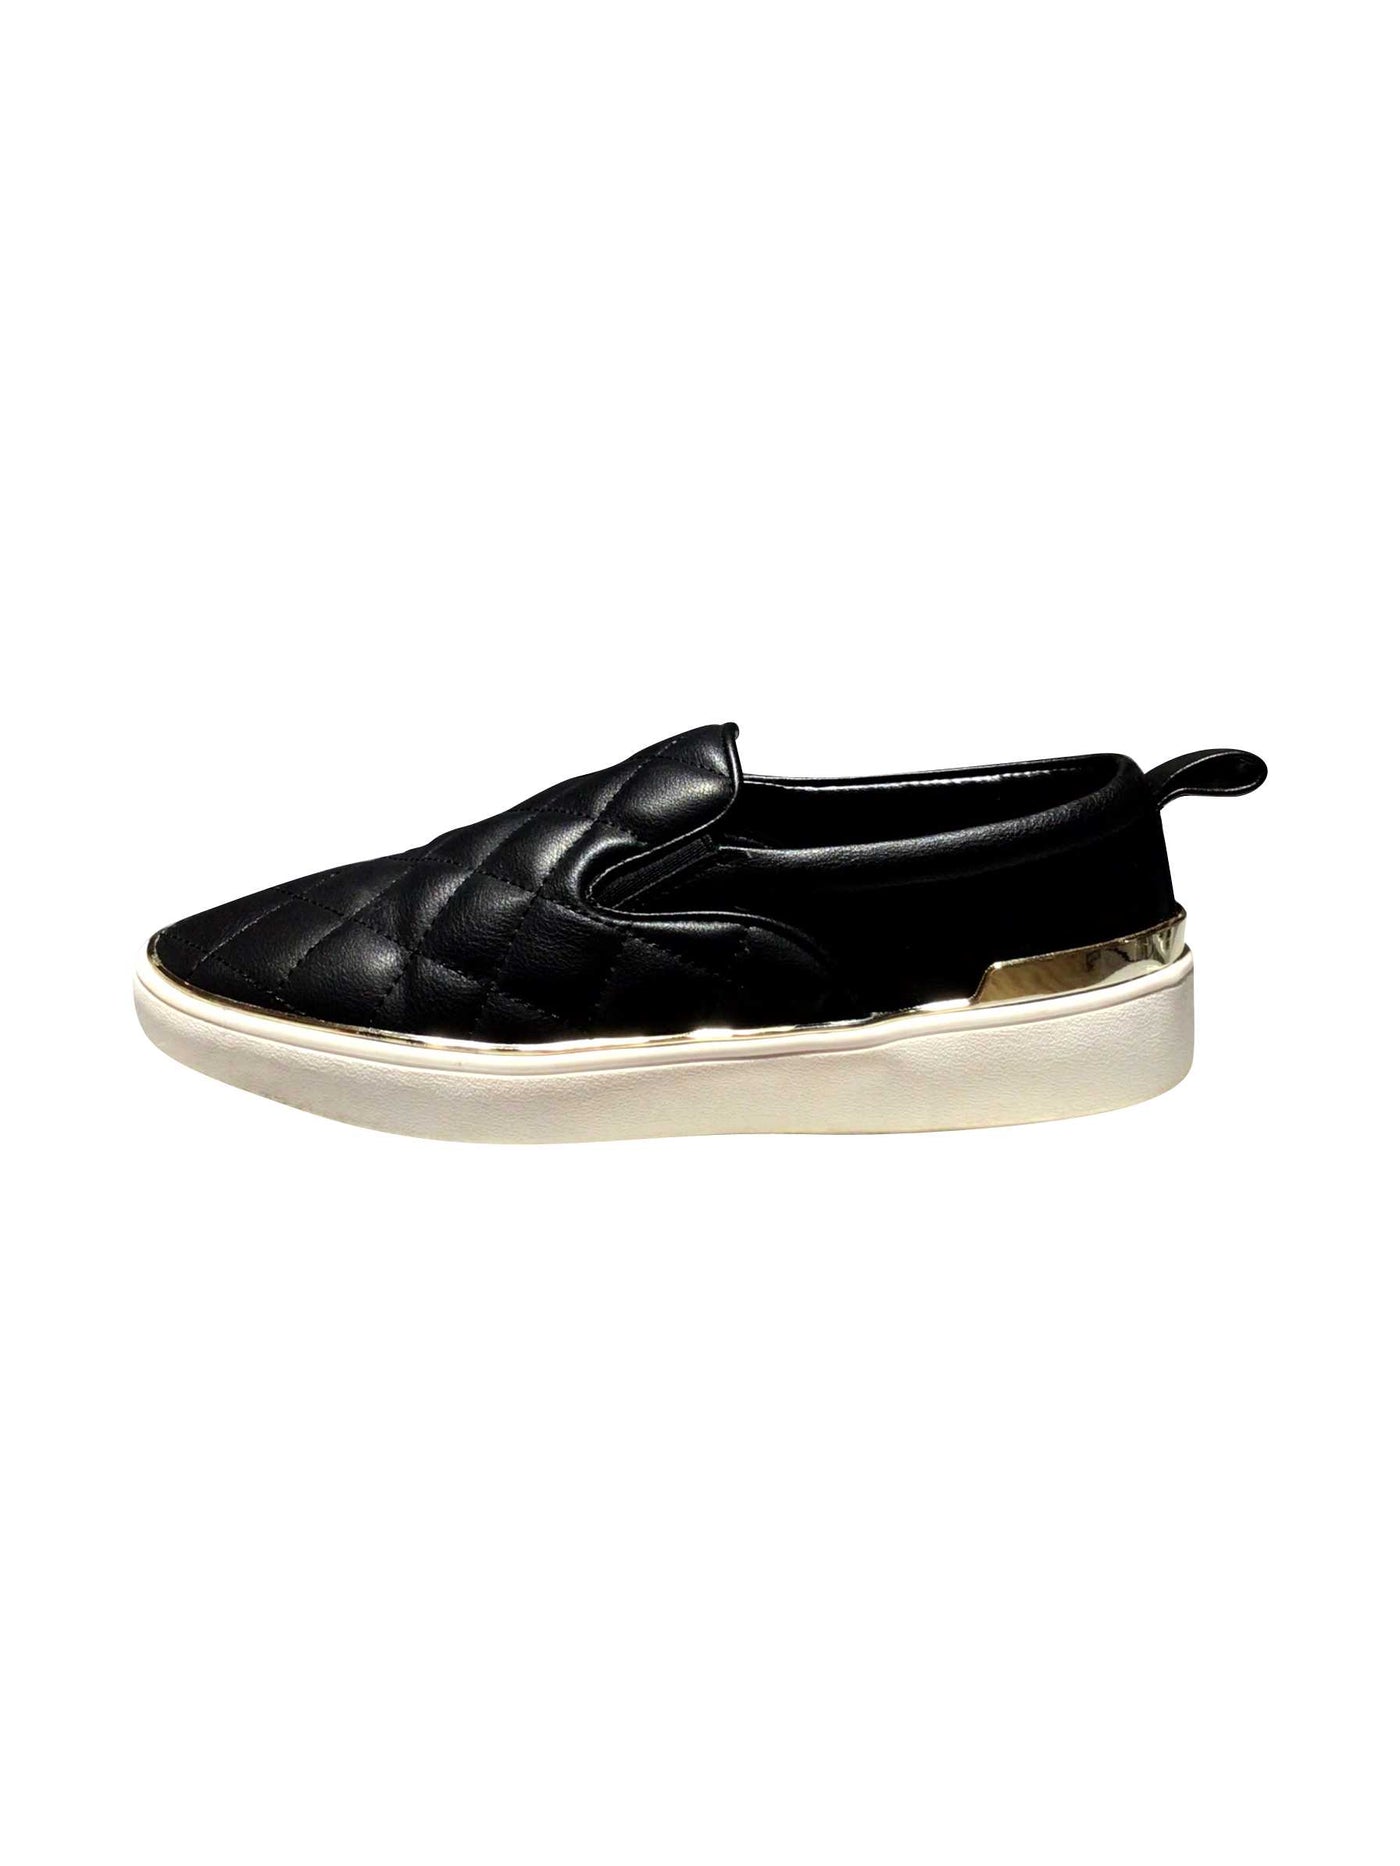 SPRING Regular fit Flats Shoes in Black - 8.5   Koop